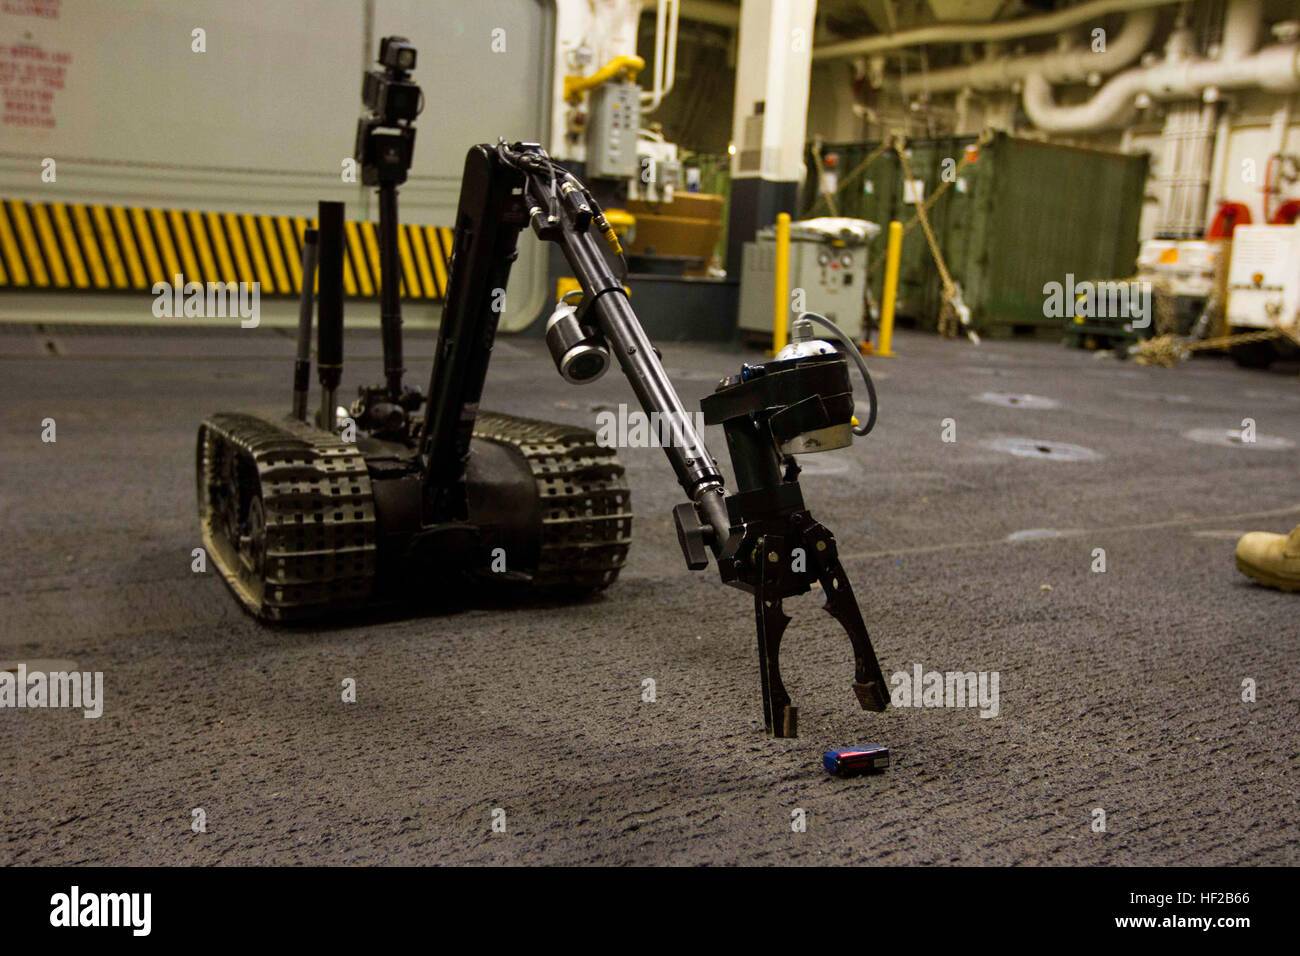 Новый боевой робот обучен не стрелять в своих - foster-miller maars робот оружие